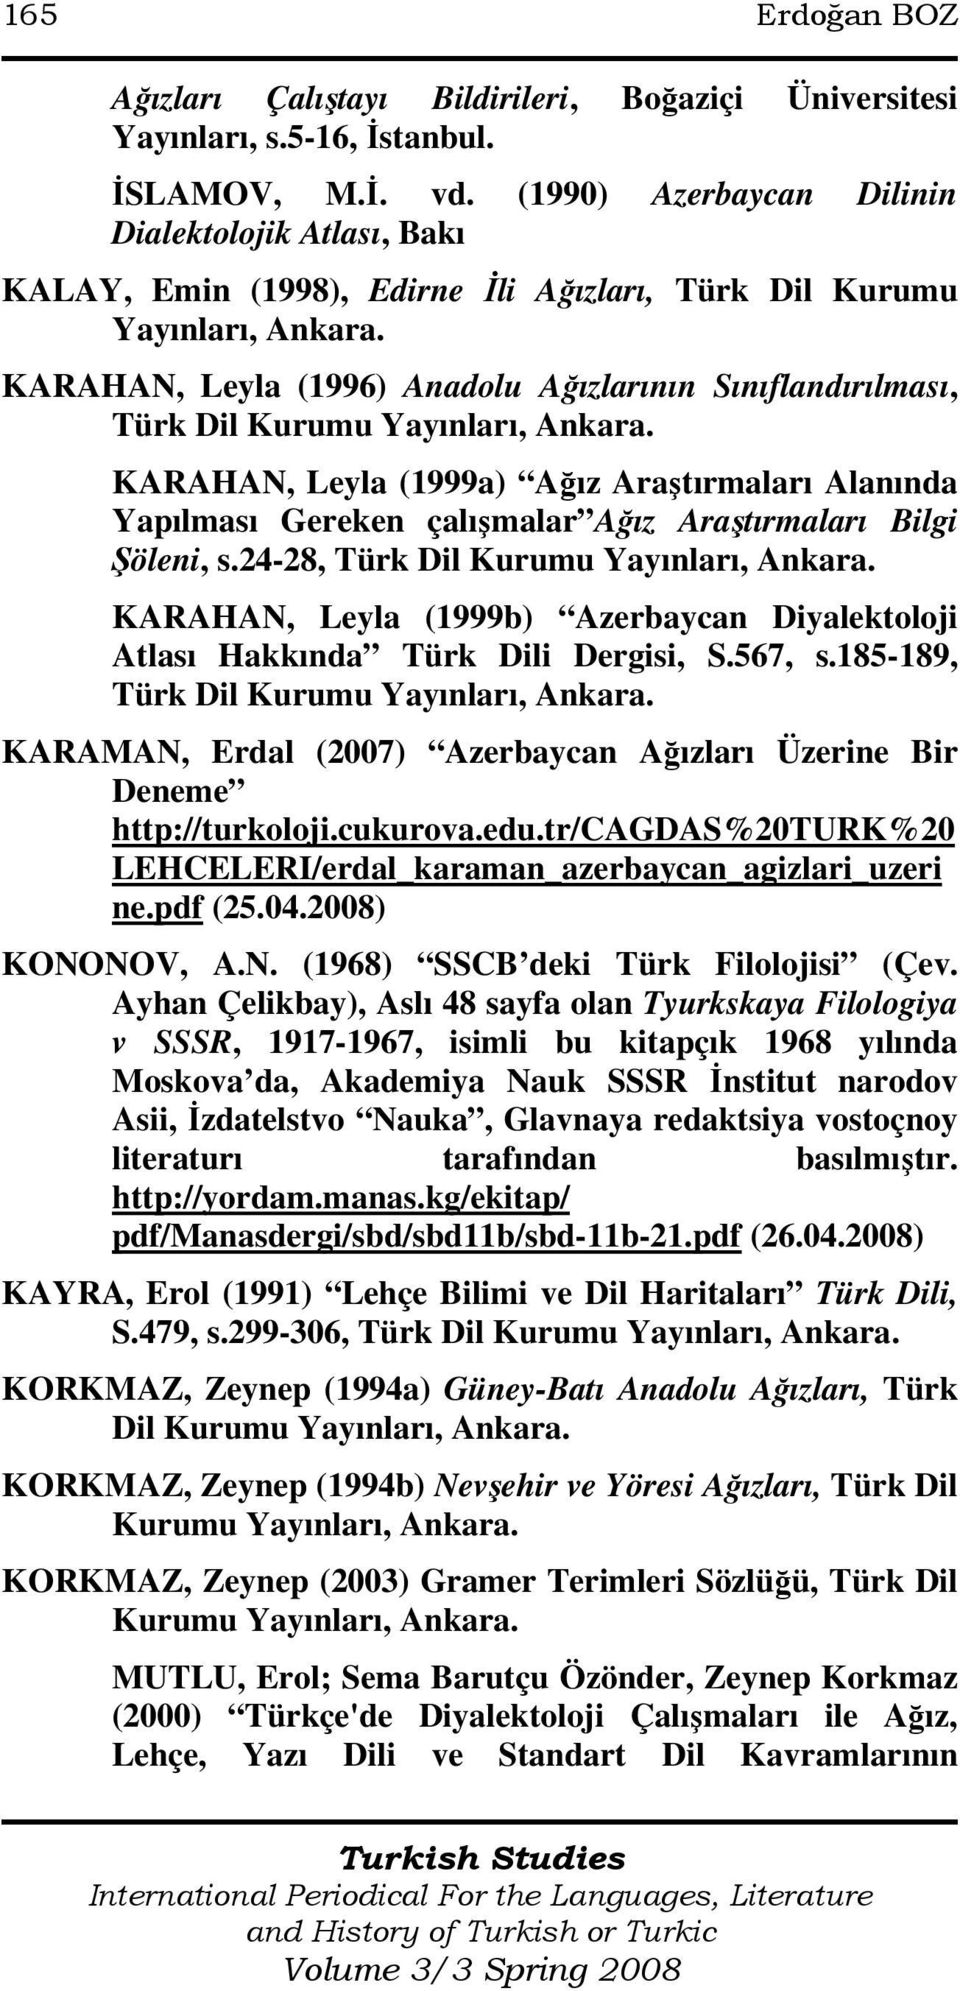 KARAHAN, Leyla (1996) Anadolu Ağızlarının Sınıflandırılması, Türk Dil Kurumu Yayınları, Ankara.